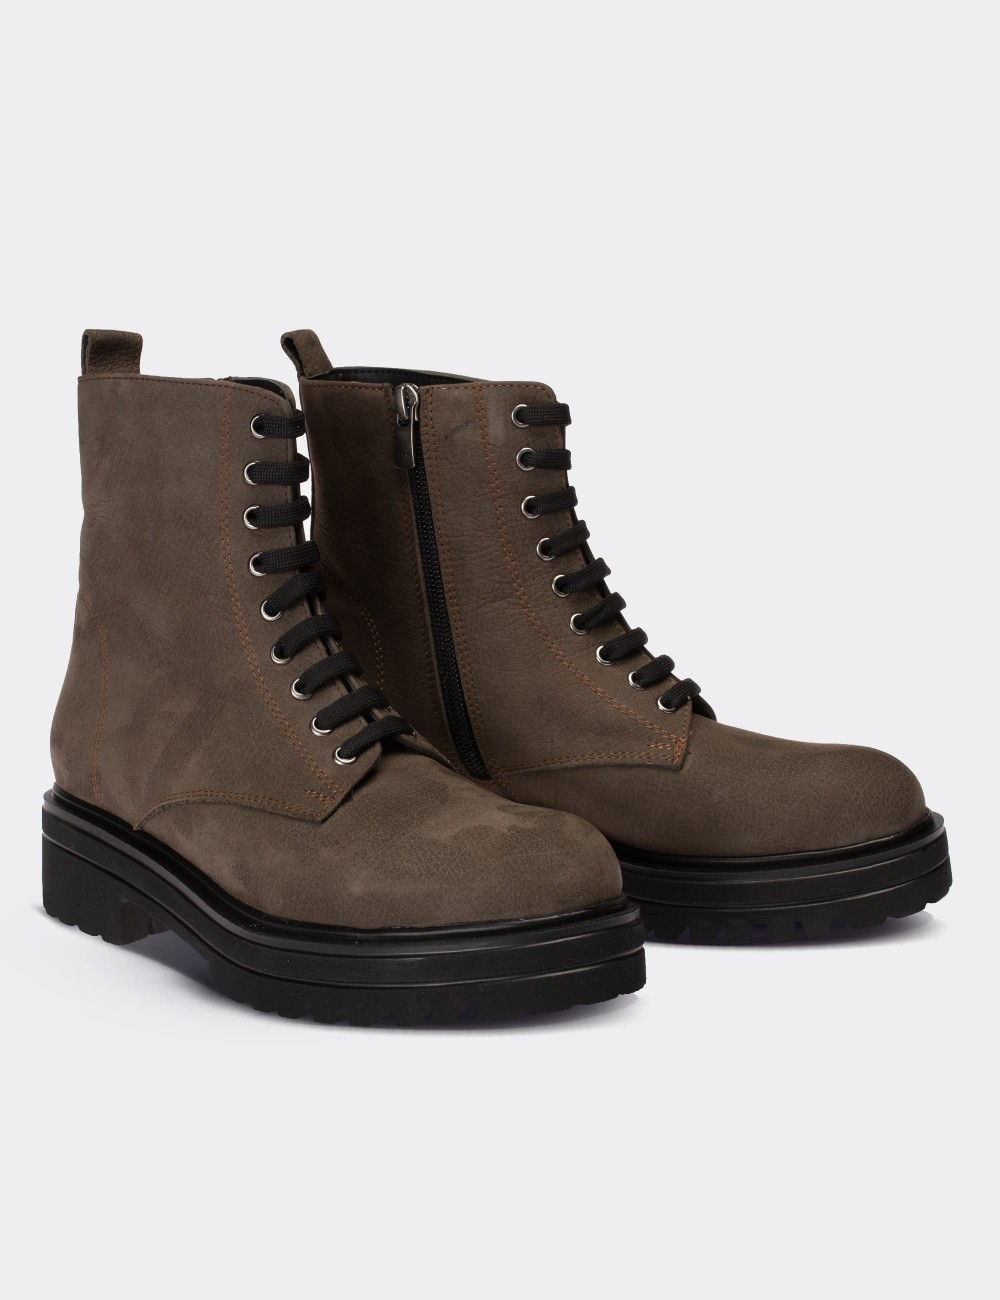 Sandstone Nubuck Leather Boots - 01814ZVZNE04